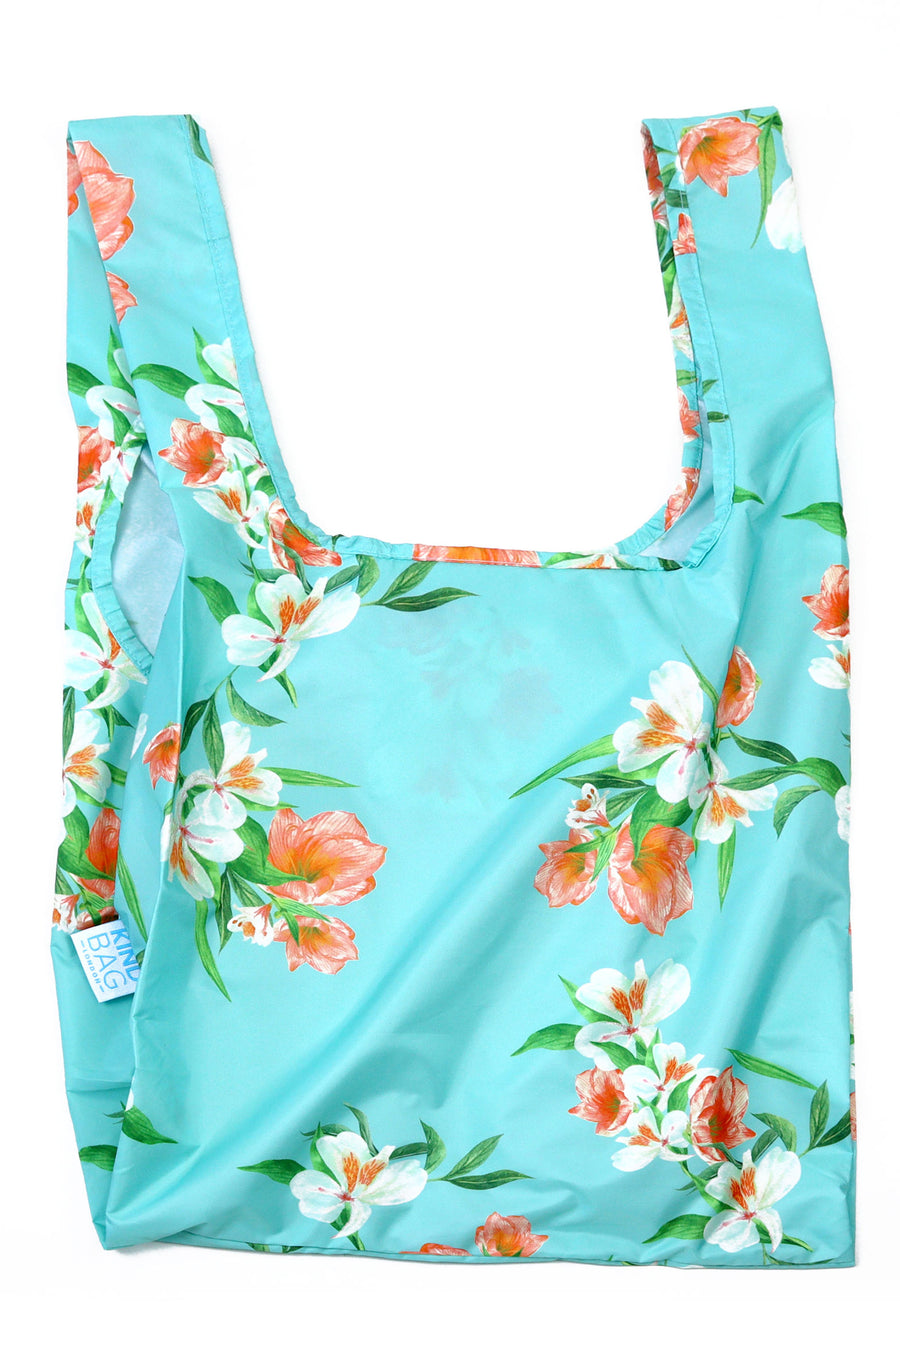 Kind Bag Floral Blue Reusable Bag Flatlay